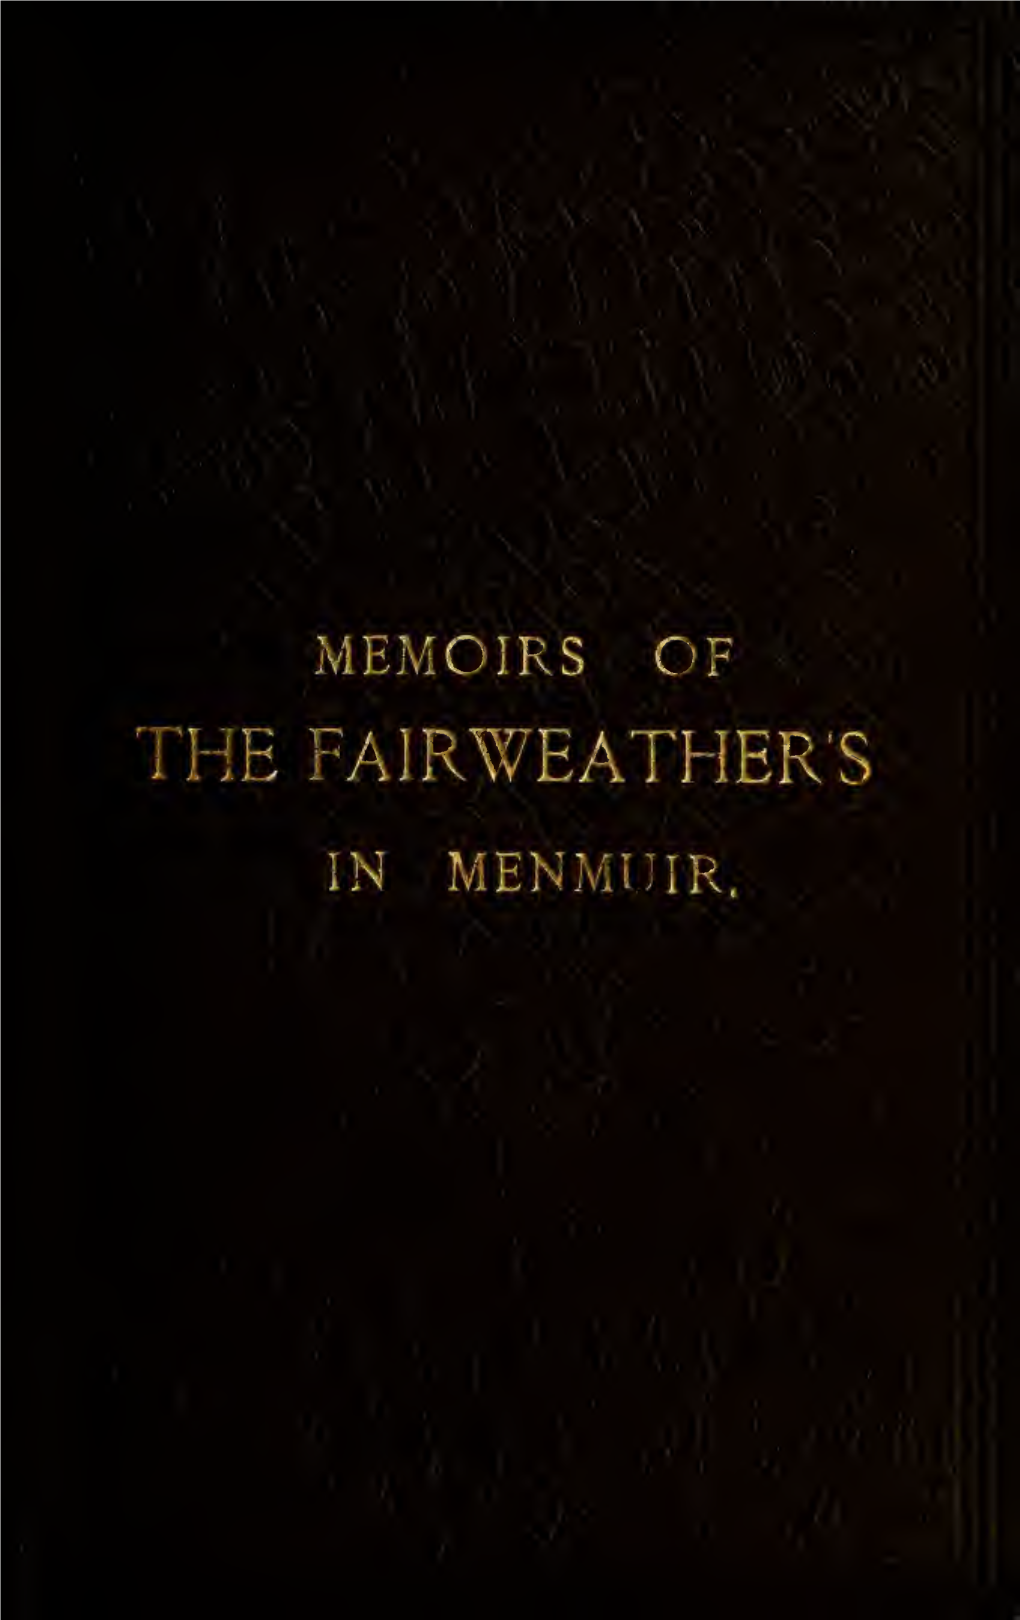 Memorandum Regarding the Fairweathers of Menmuir Parish